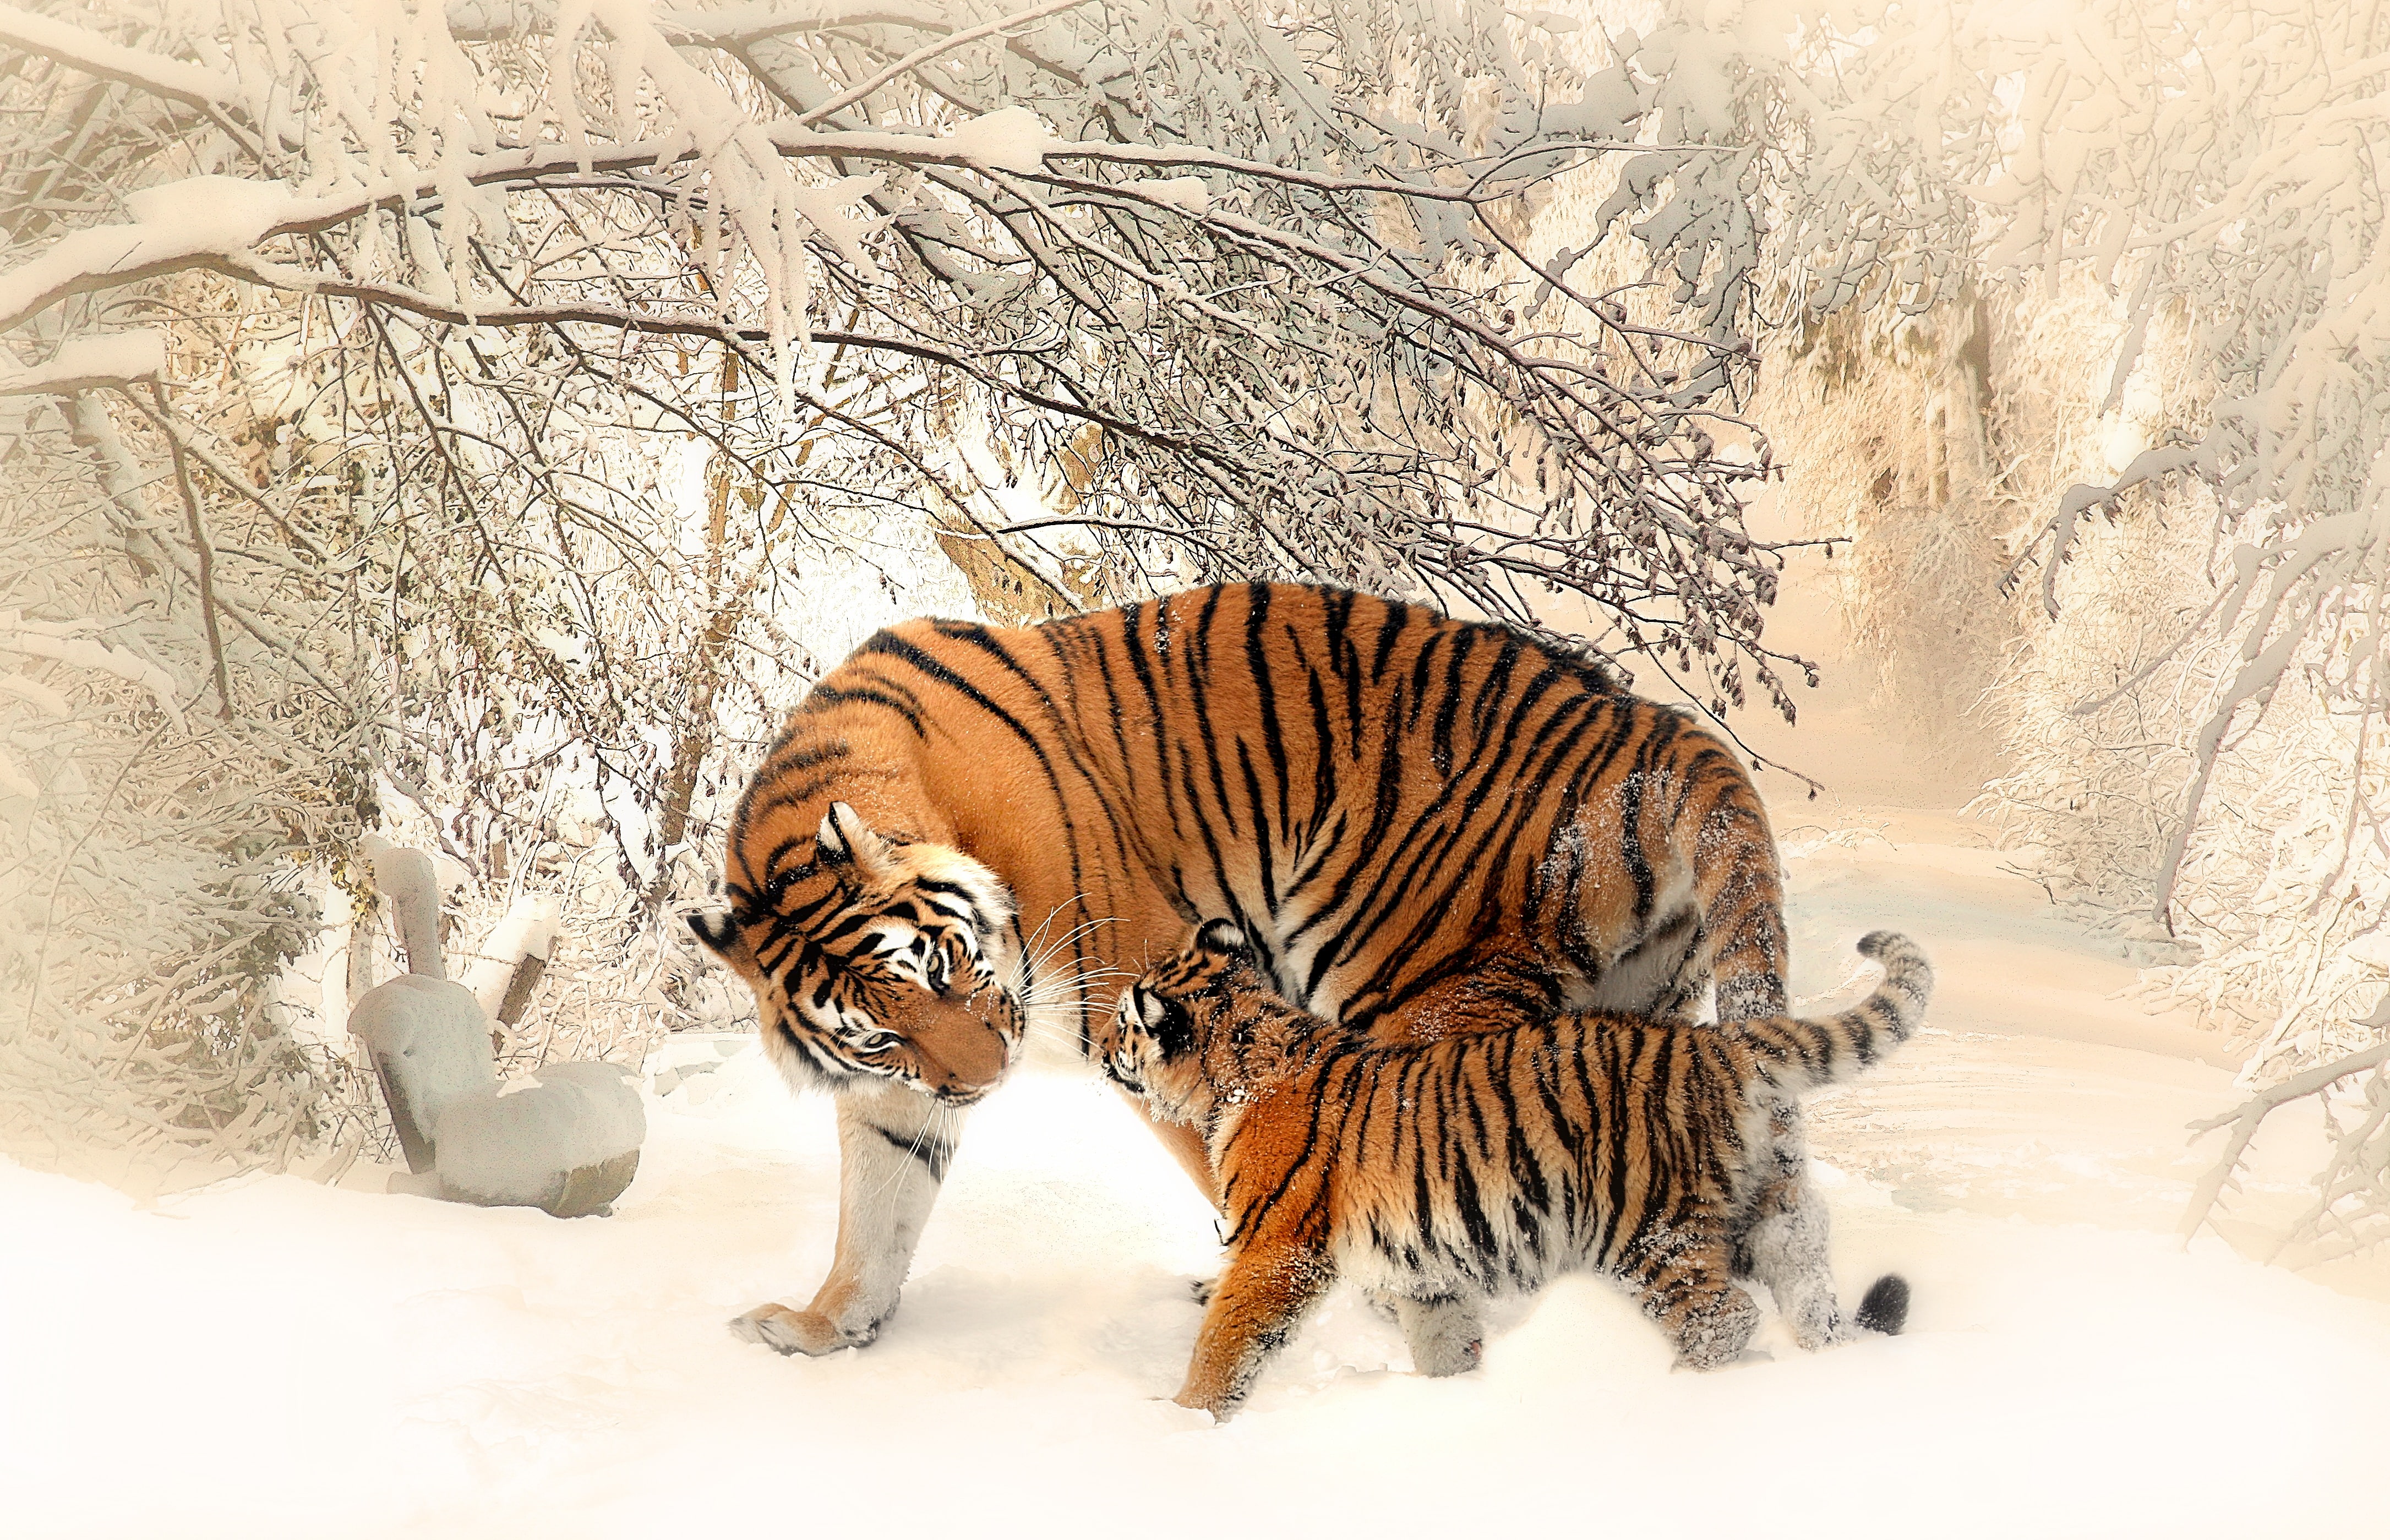 Tiger, Tiger cub, Baby tiger, Snow, 4K